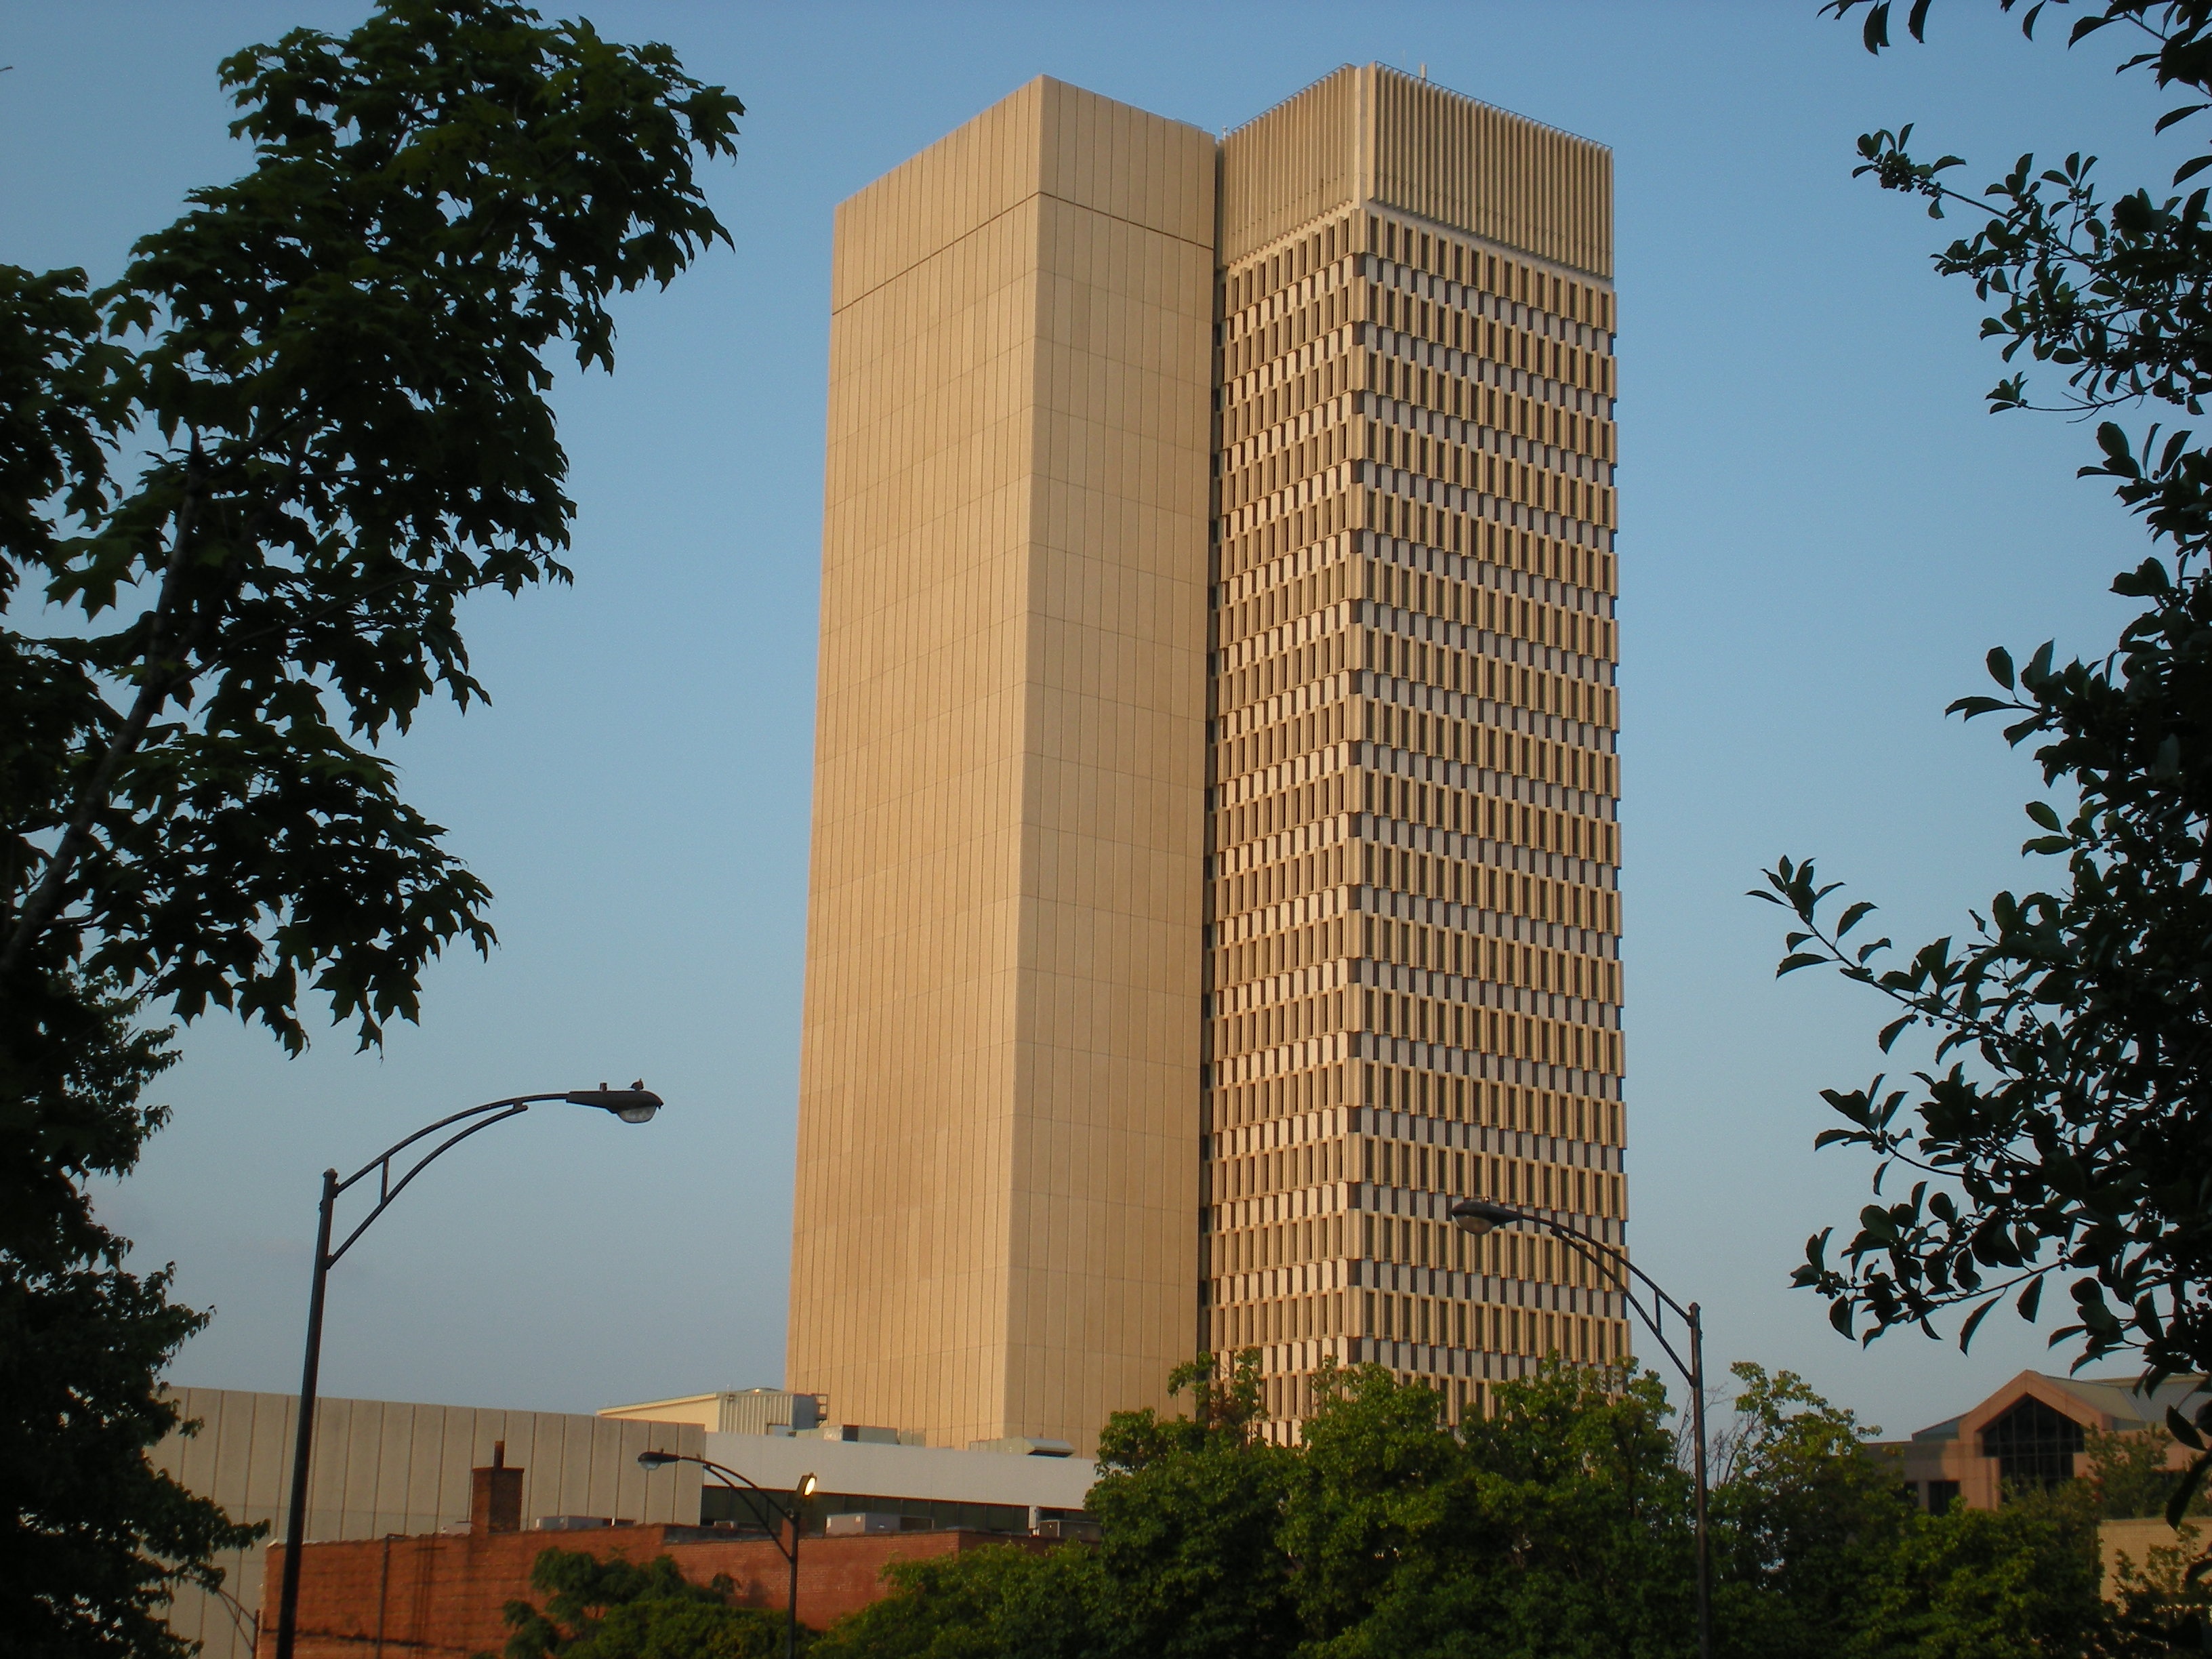 File:Landmark Tower, Greenville, SC.jpg - Wikimedia Commons